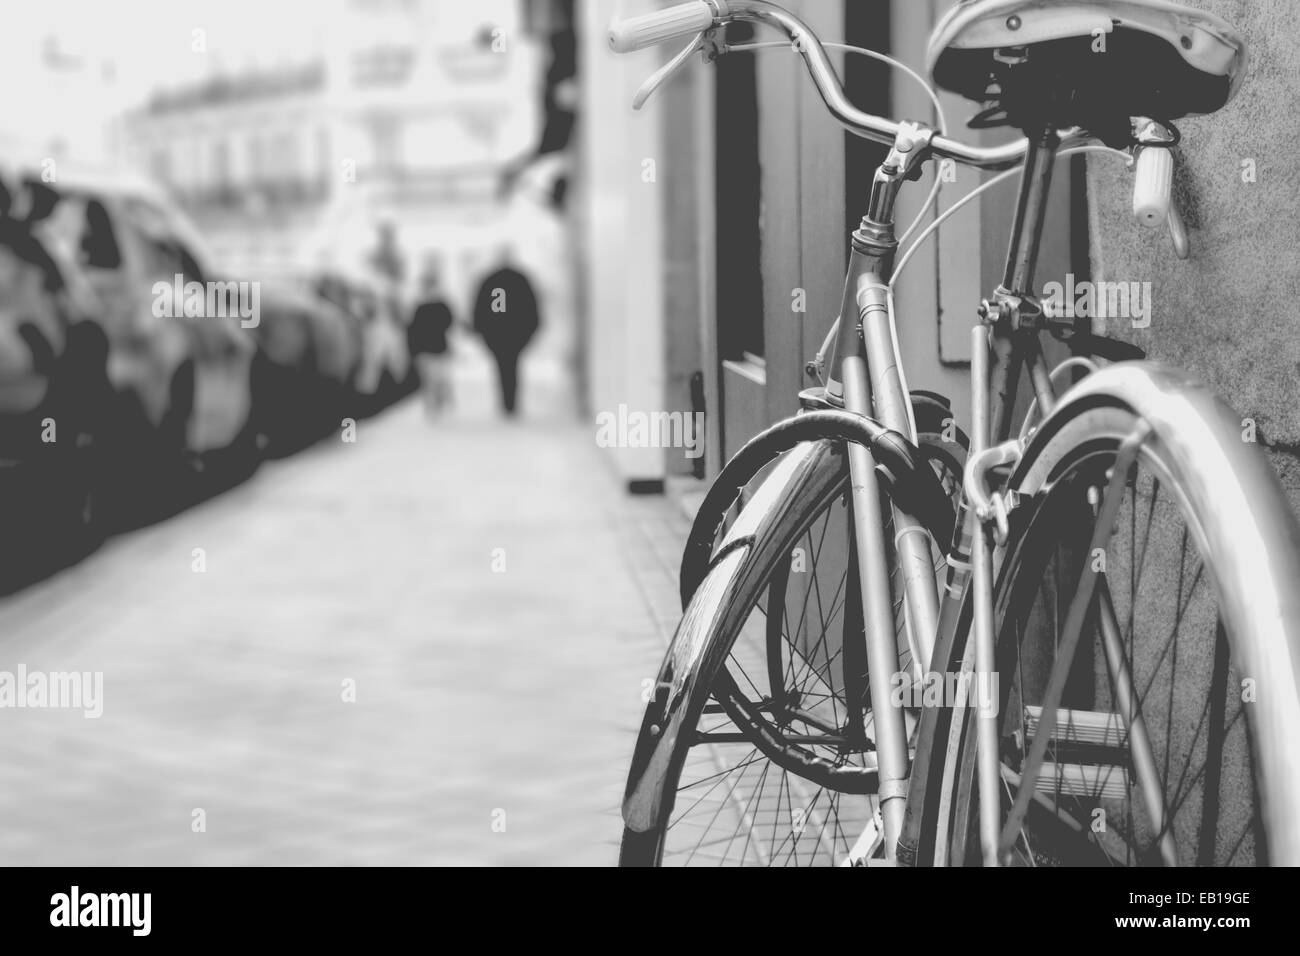 Dettaglio Di Una Bici Vintage In Una Fotografia In Bianco E Nero Con Uno Sfondo Bokeh Di Fondo Foto Stock Alamy